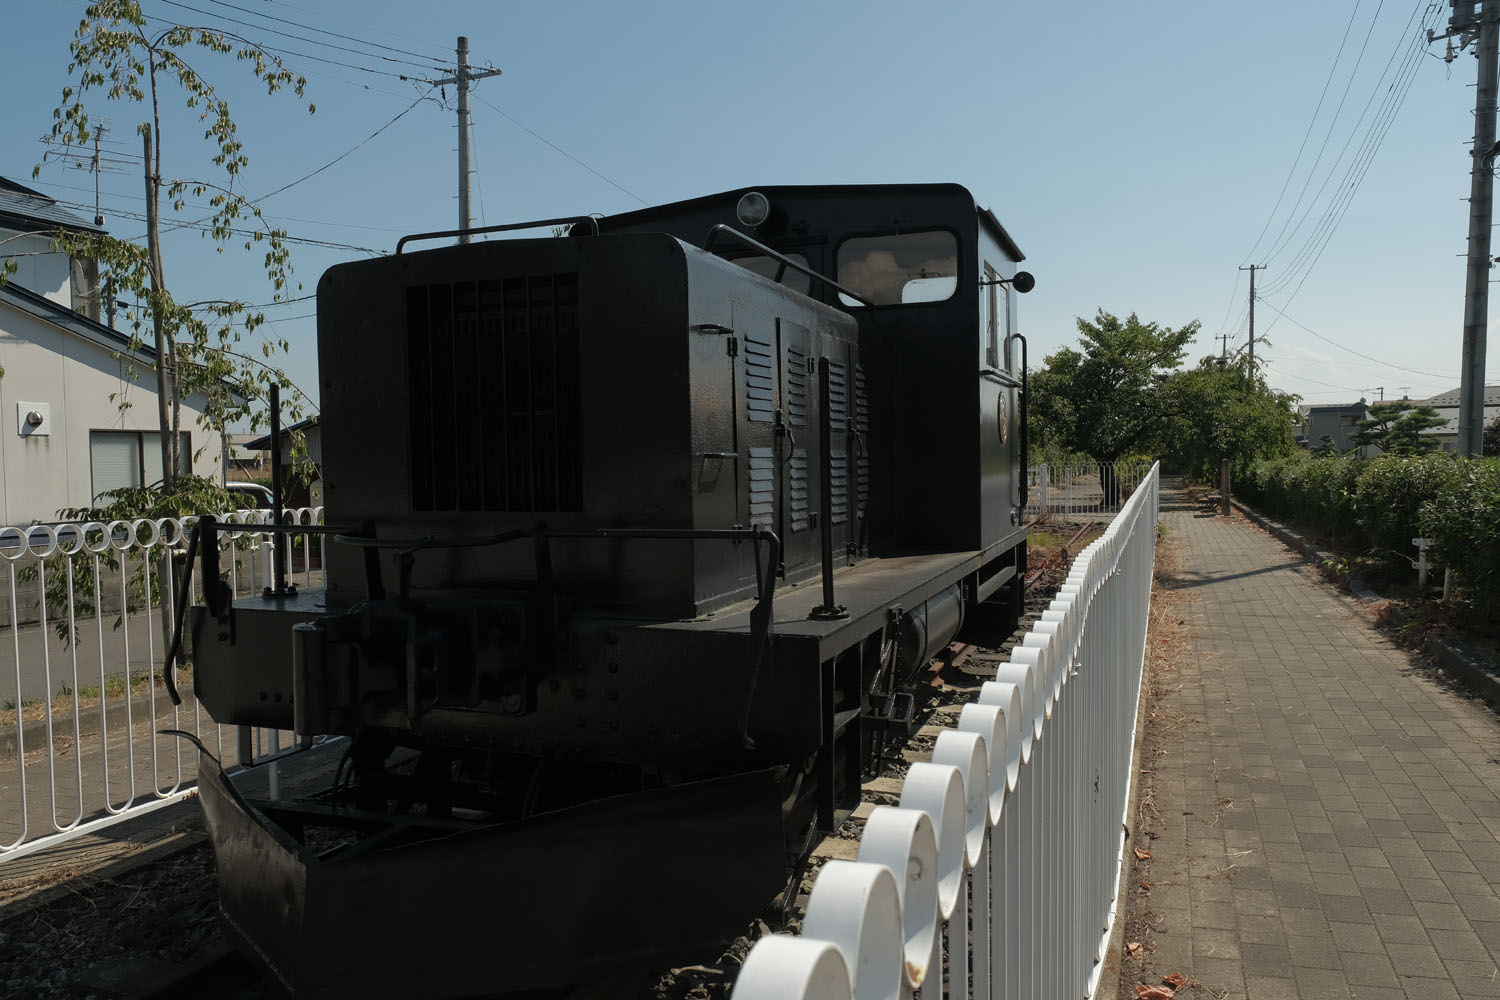 63号機と並んで展示されているのは昭和電工のディーゼル機関車である。貨車の入れ替え作業用機関車だ。昭和電工喜多方工場で使用されたそうだ。